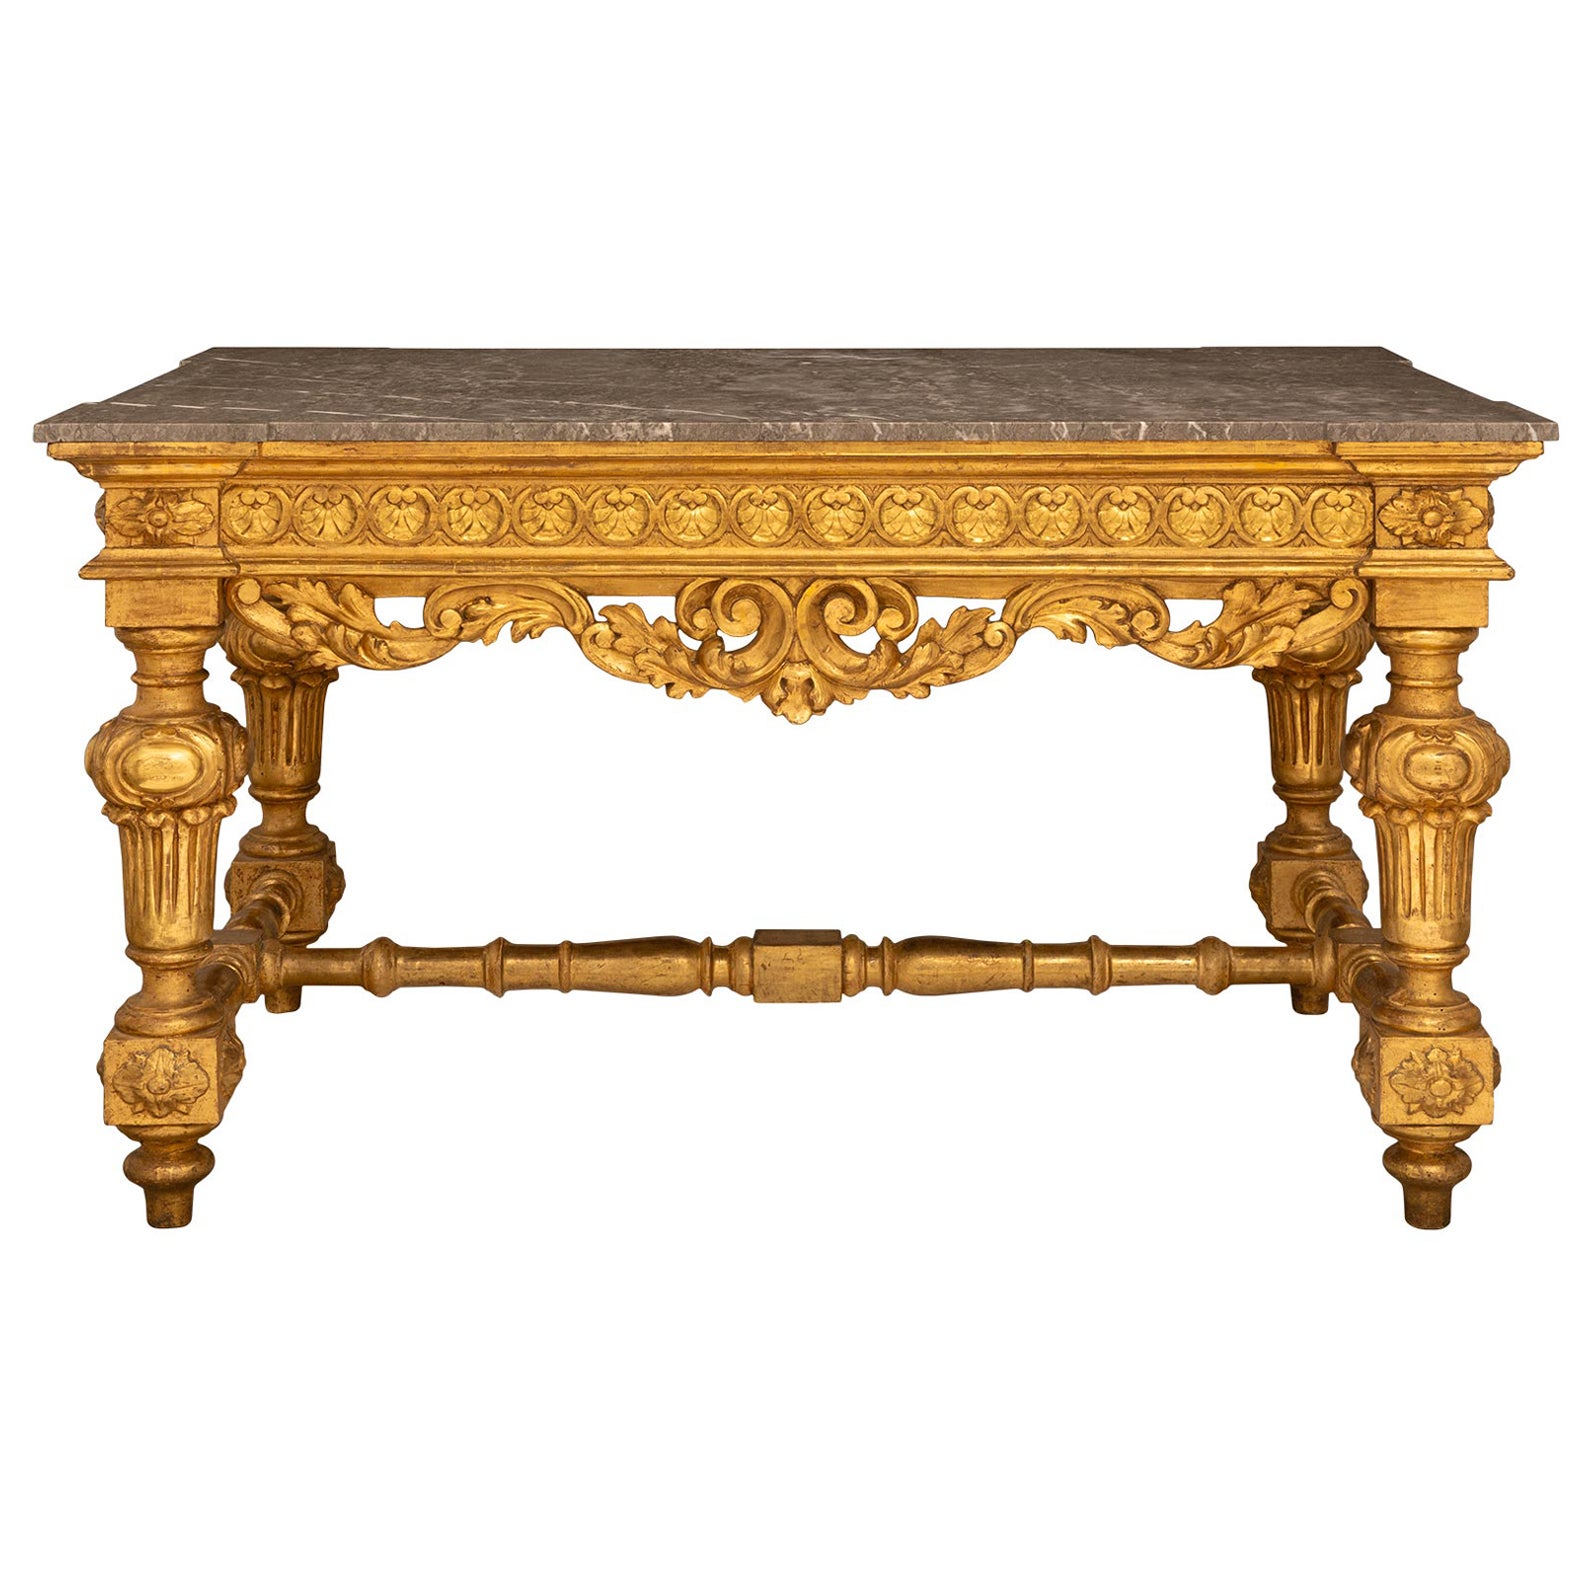 Table de centre en bois doré et marbre gris italien du début du 19e siècle de style Louis XIV